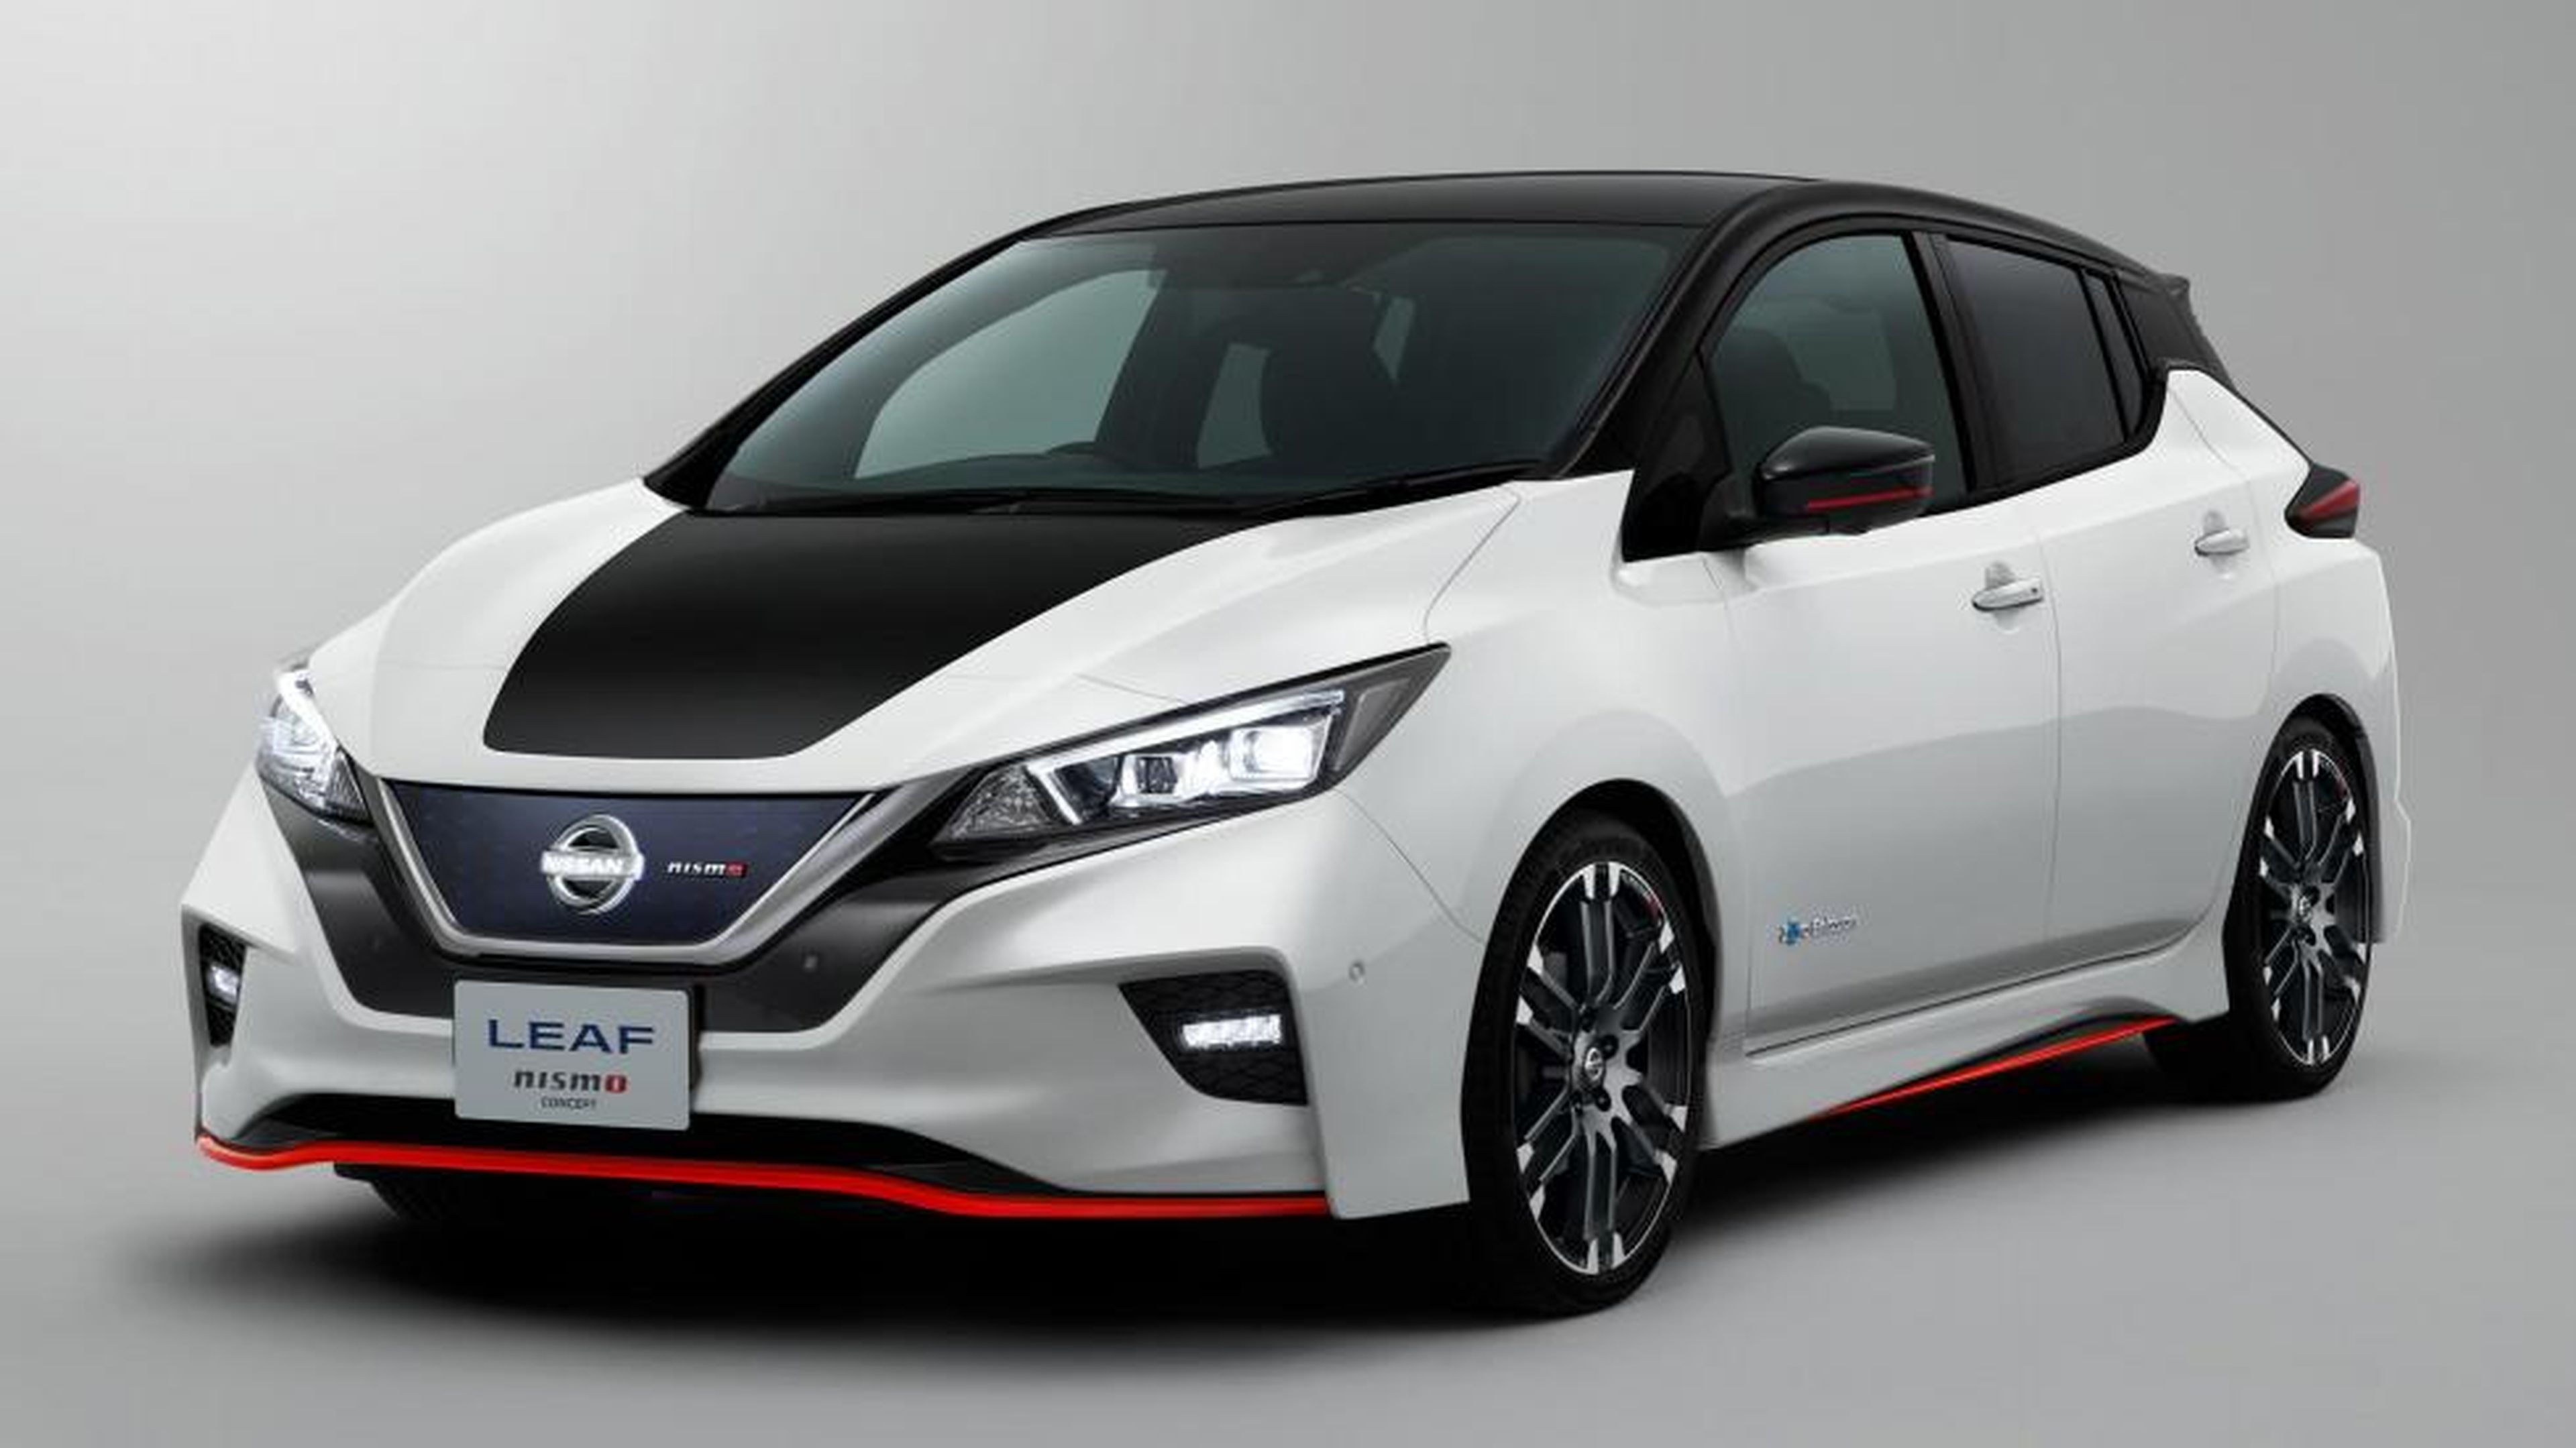 VÍDEO: Así es el Nissan Leaf Nismo Concept, ¡ya lo han desvelado! [TG]